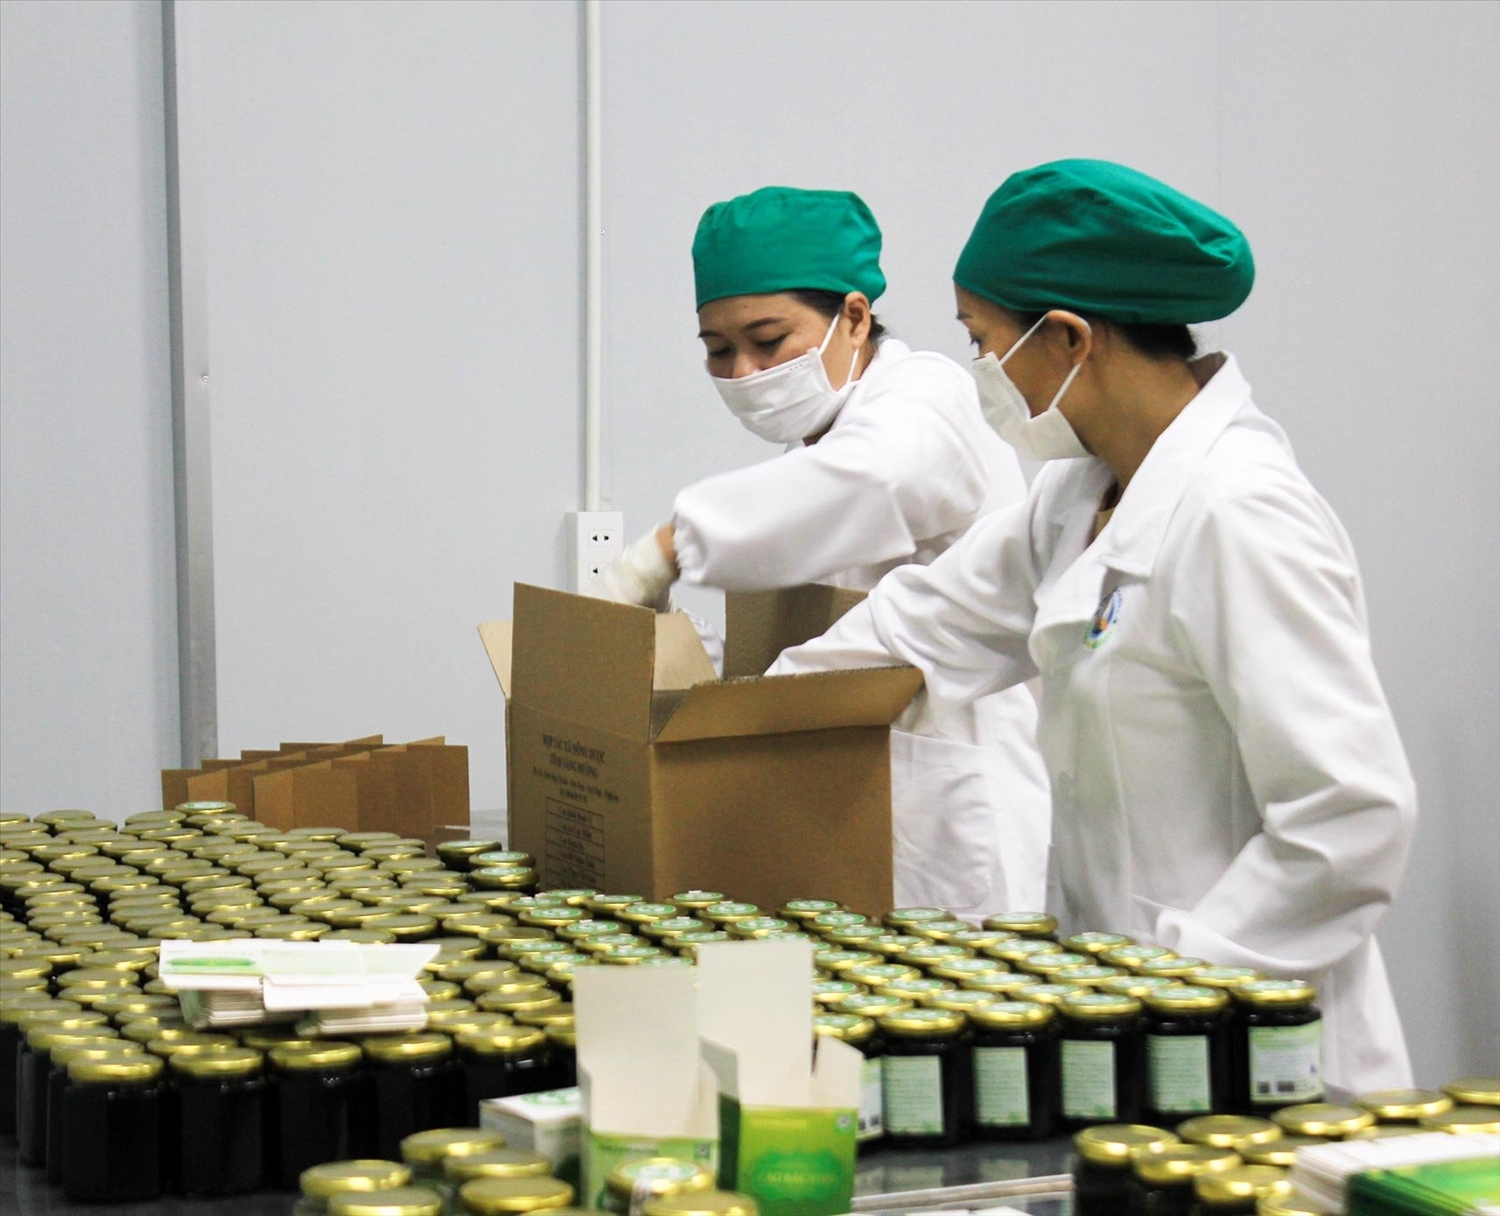 Sản phẩm Trà túi lọc cà gai leo, bột rau má sấy lạnh, mật ong của Hợp tác xã Tĩnh Sáng Đường được công nhận là sản phẩm OCOP tiêu chuẩn 3 sao của tỉnh Nghệ An.